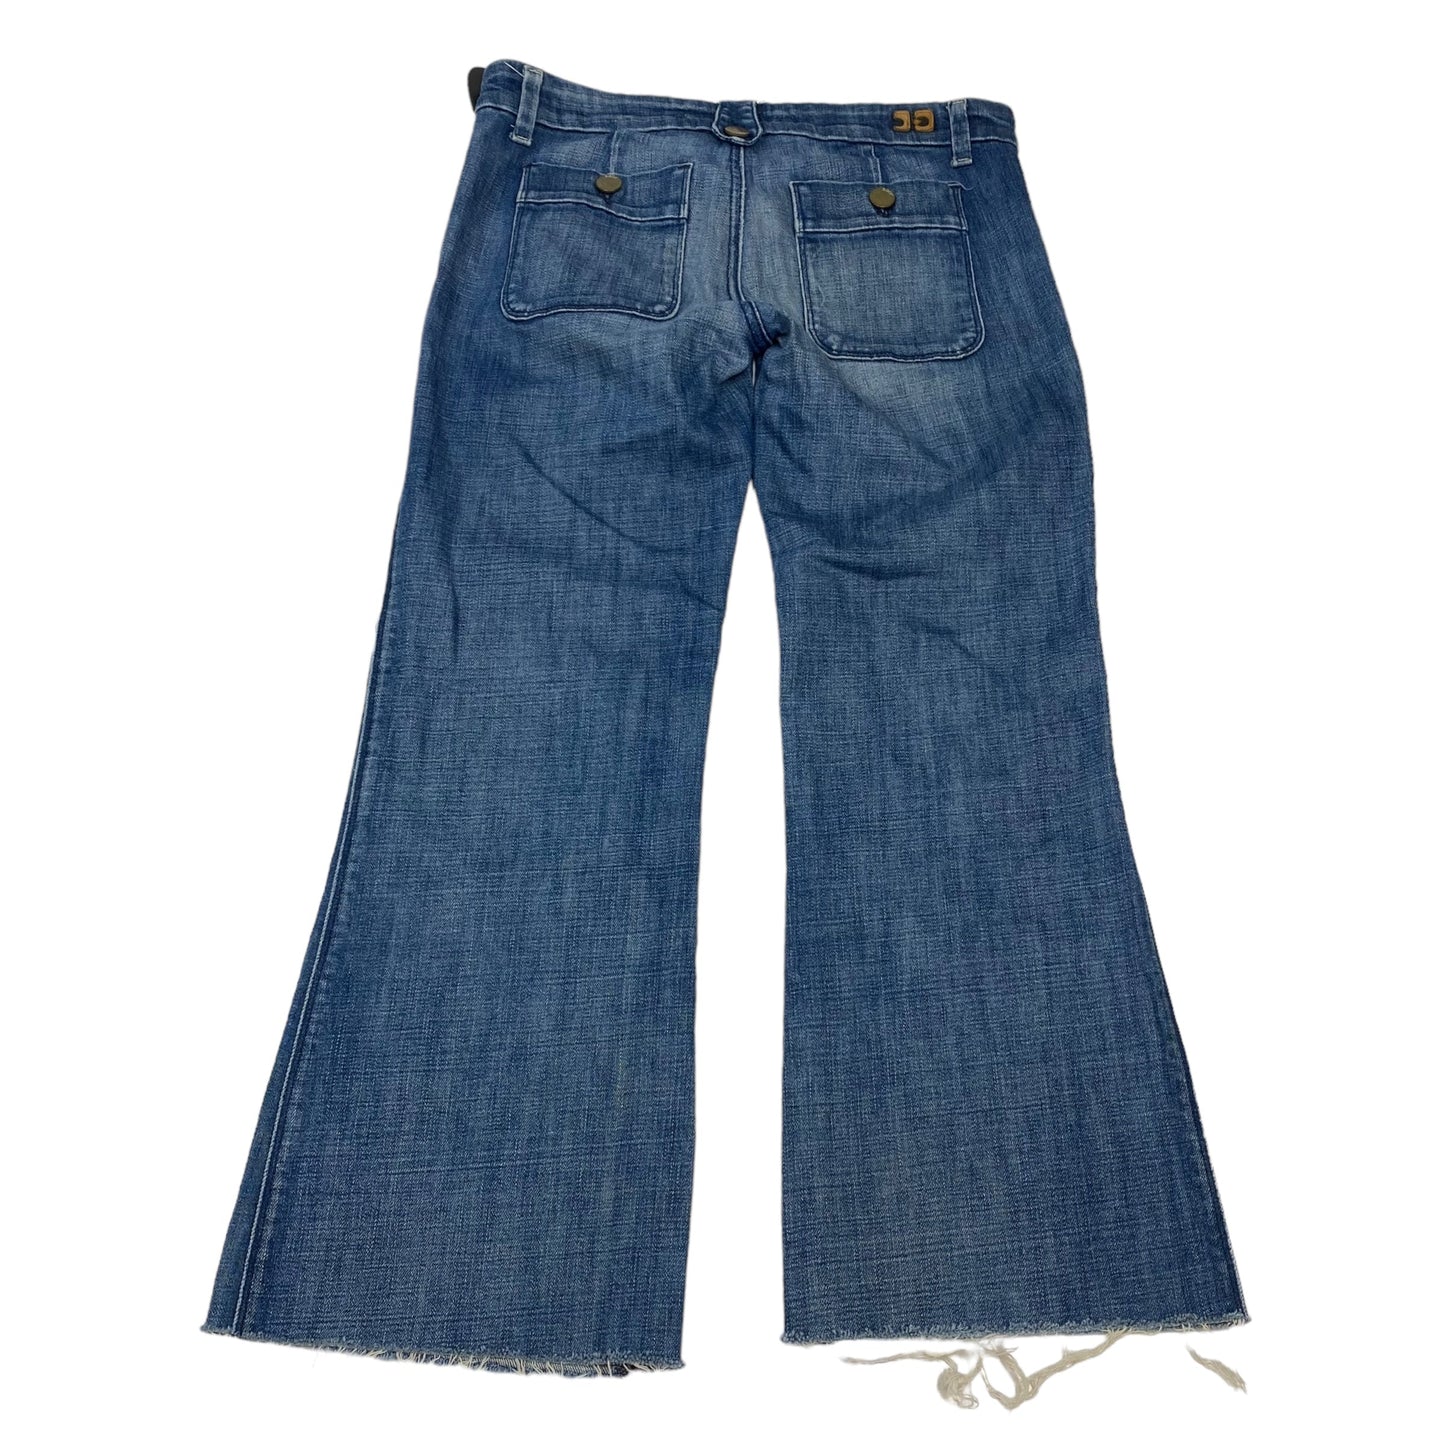 Blue Denim Jeans Designer Joes Jeans, Size 6